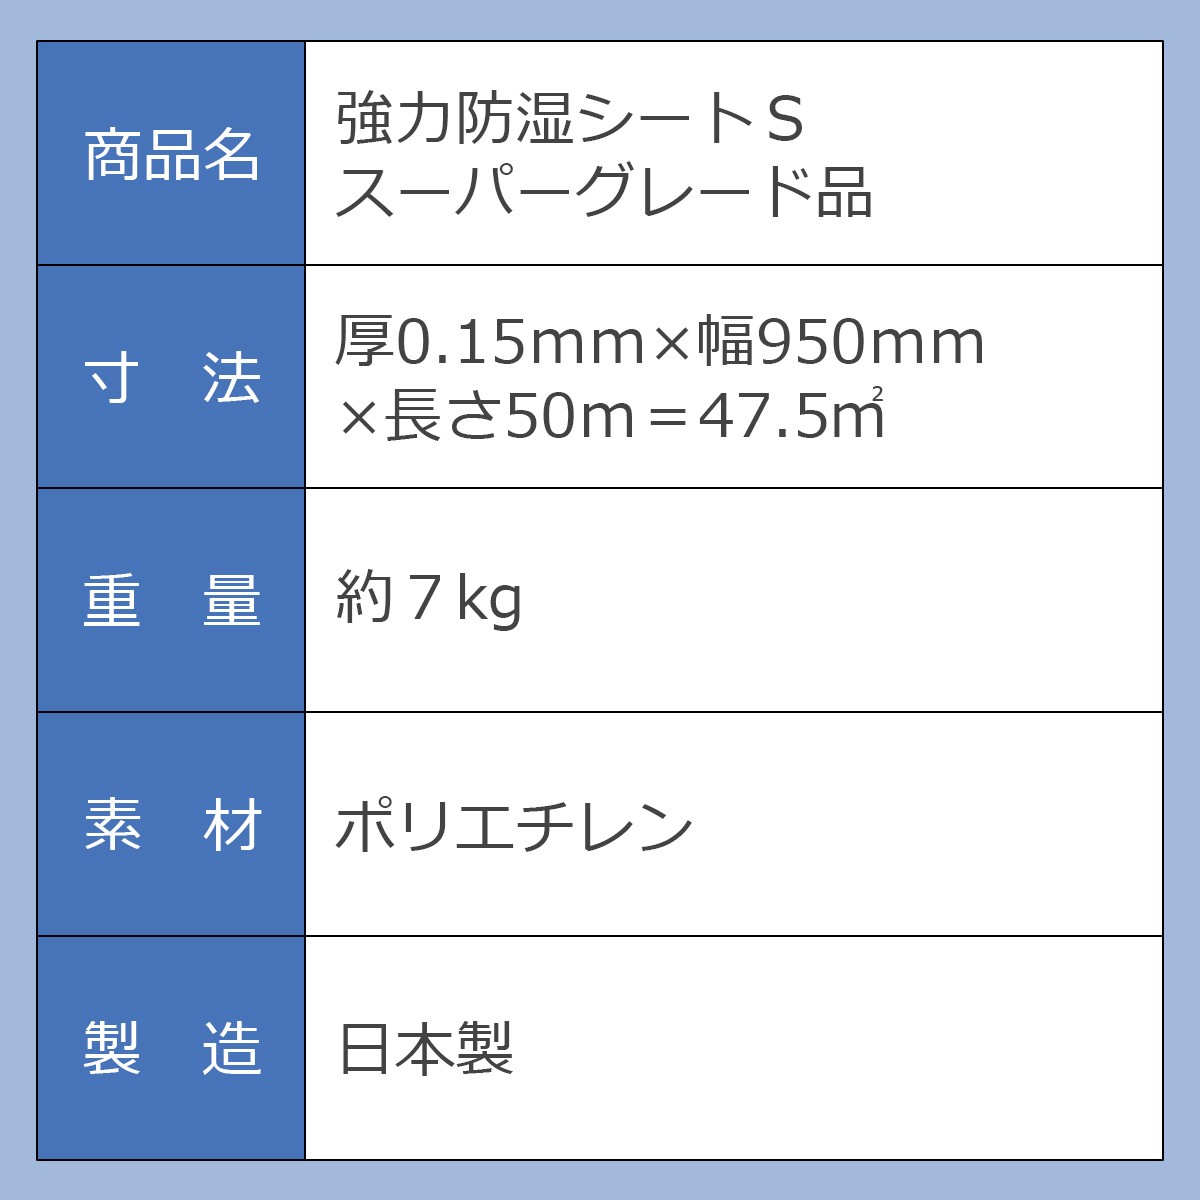 商品名：強力防湿シートＳ スーパーグレード品 寸法：厚0.15ミリ×幅950ミリ×長さ50メートル＝47.5平方メートル 重量：約7kg 素材：ポリエチレン 製造：日本製